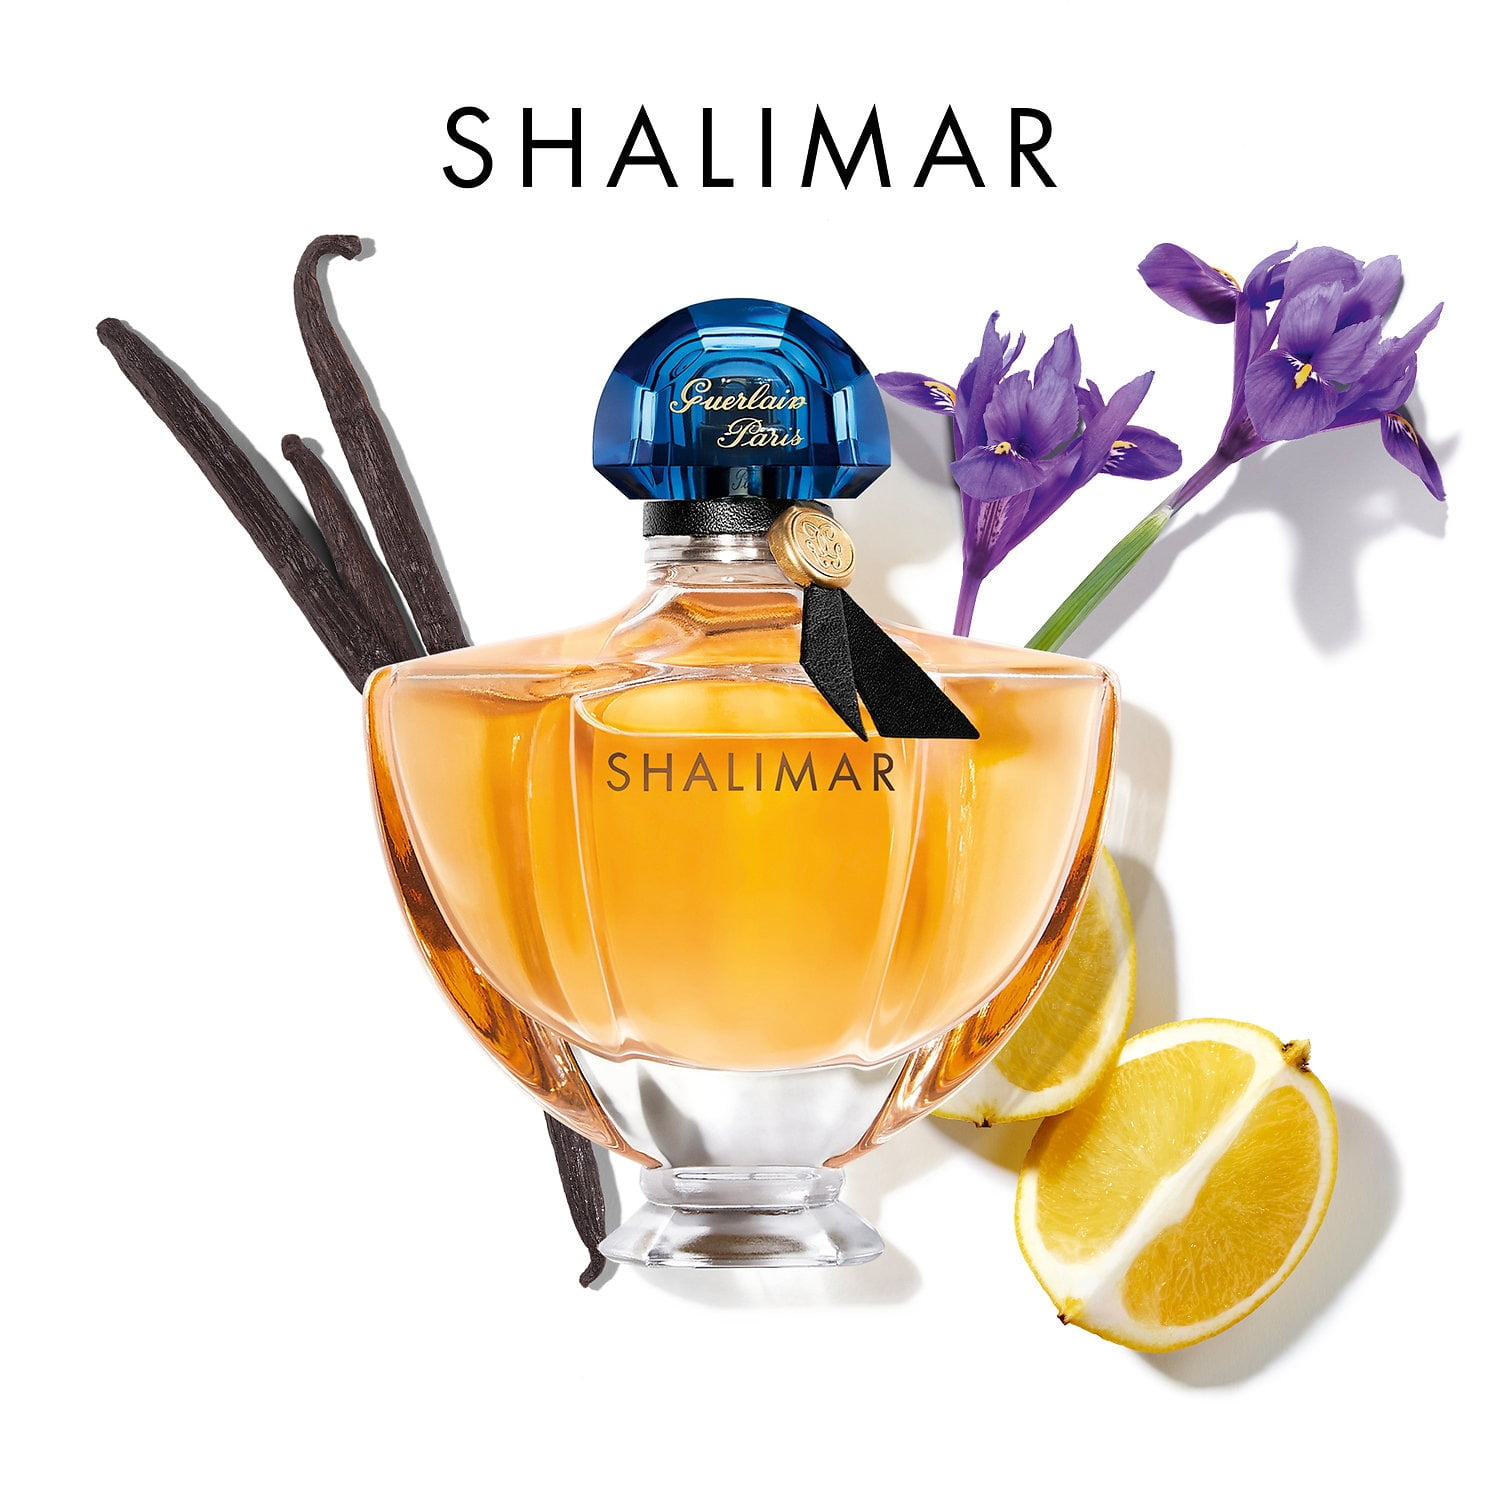 Guerlain Shalimar Eau de Toilette Perfume for Women 3 oz - Walmart.com